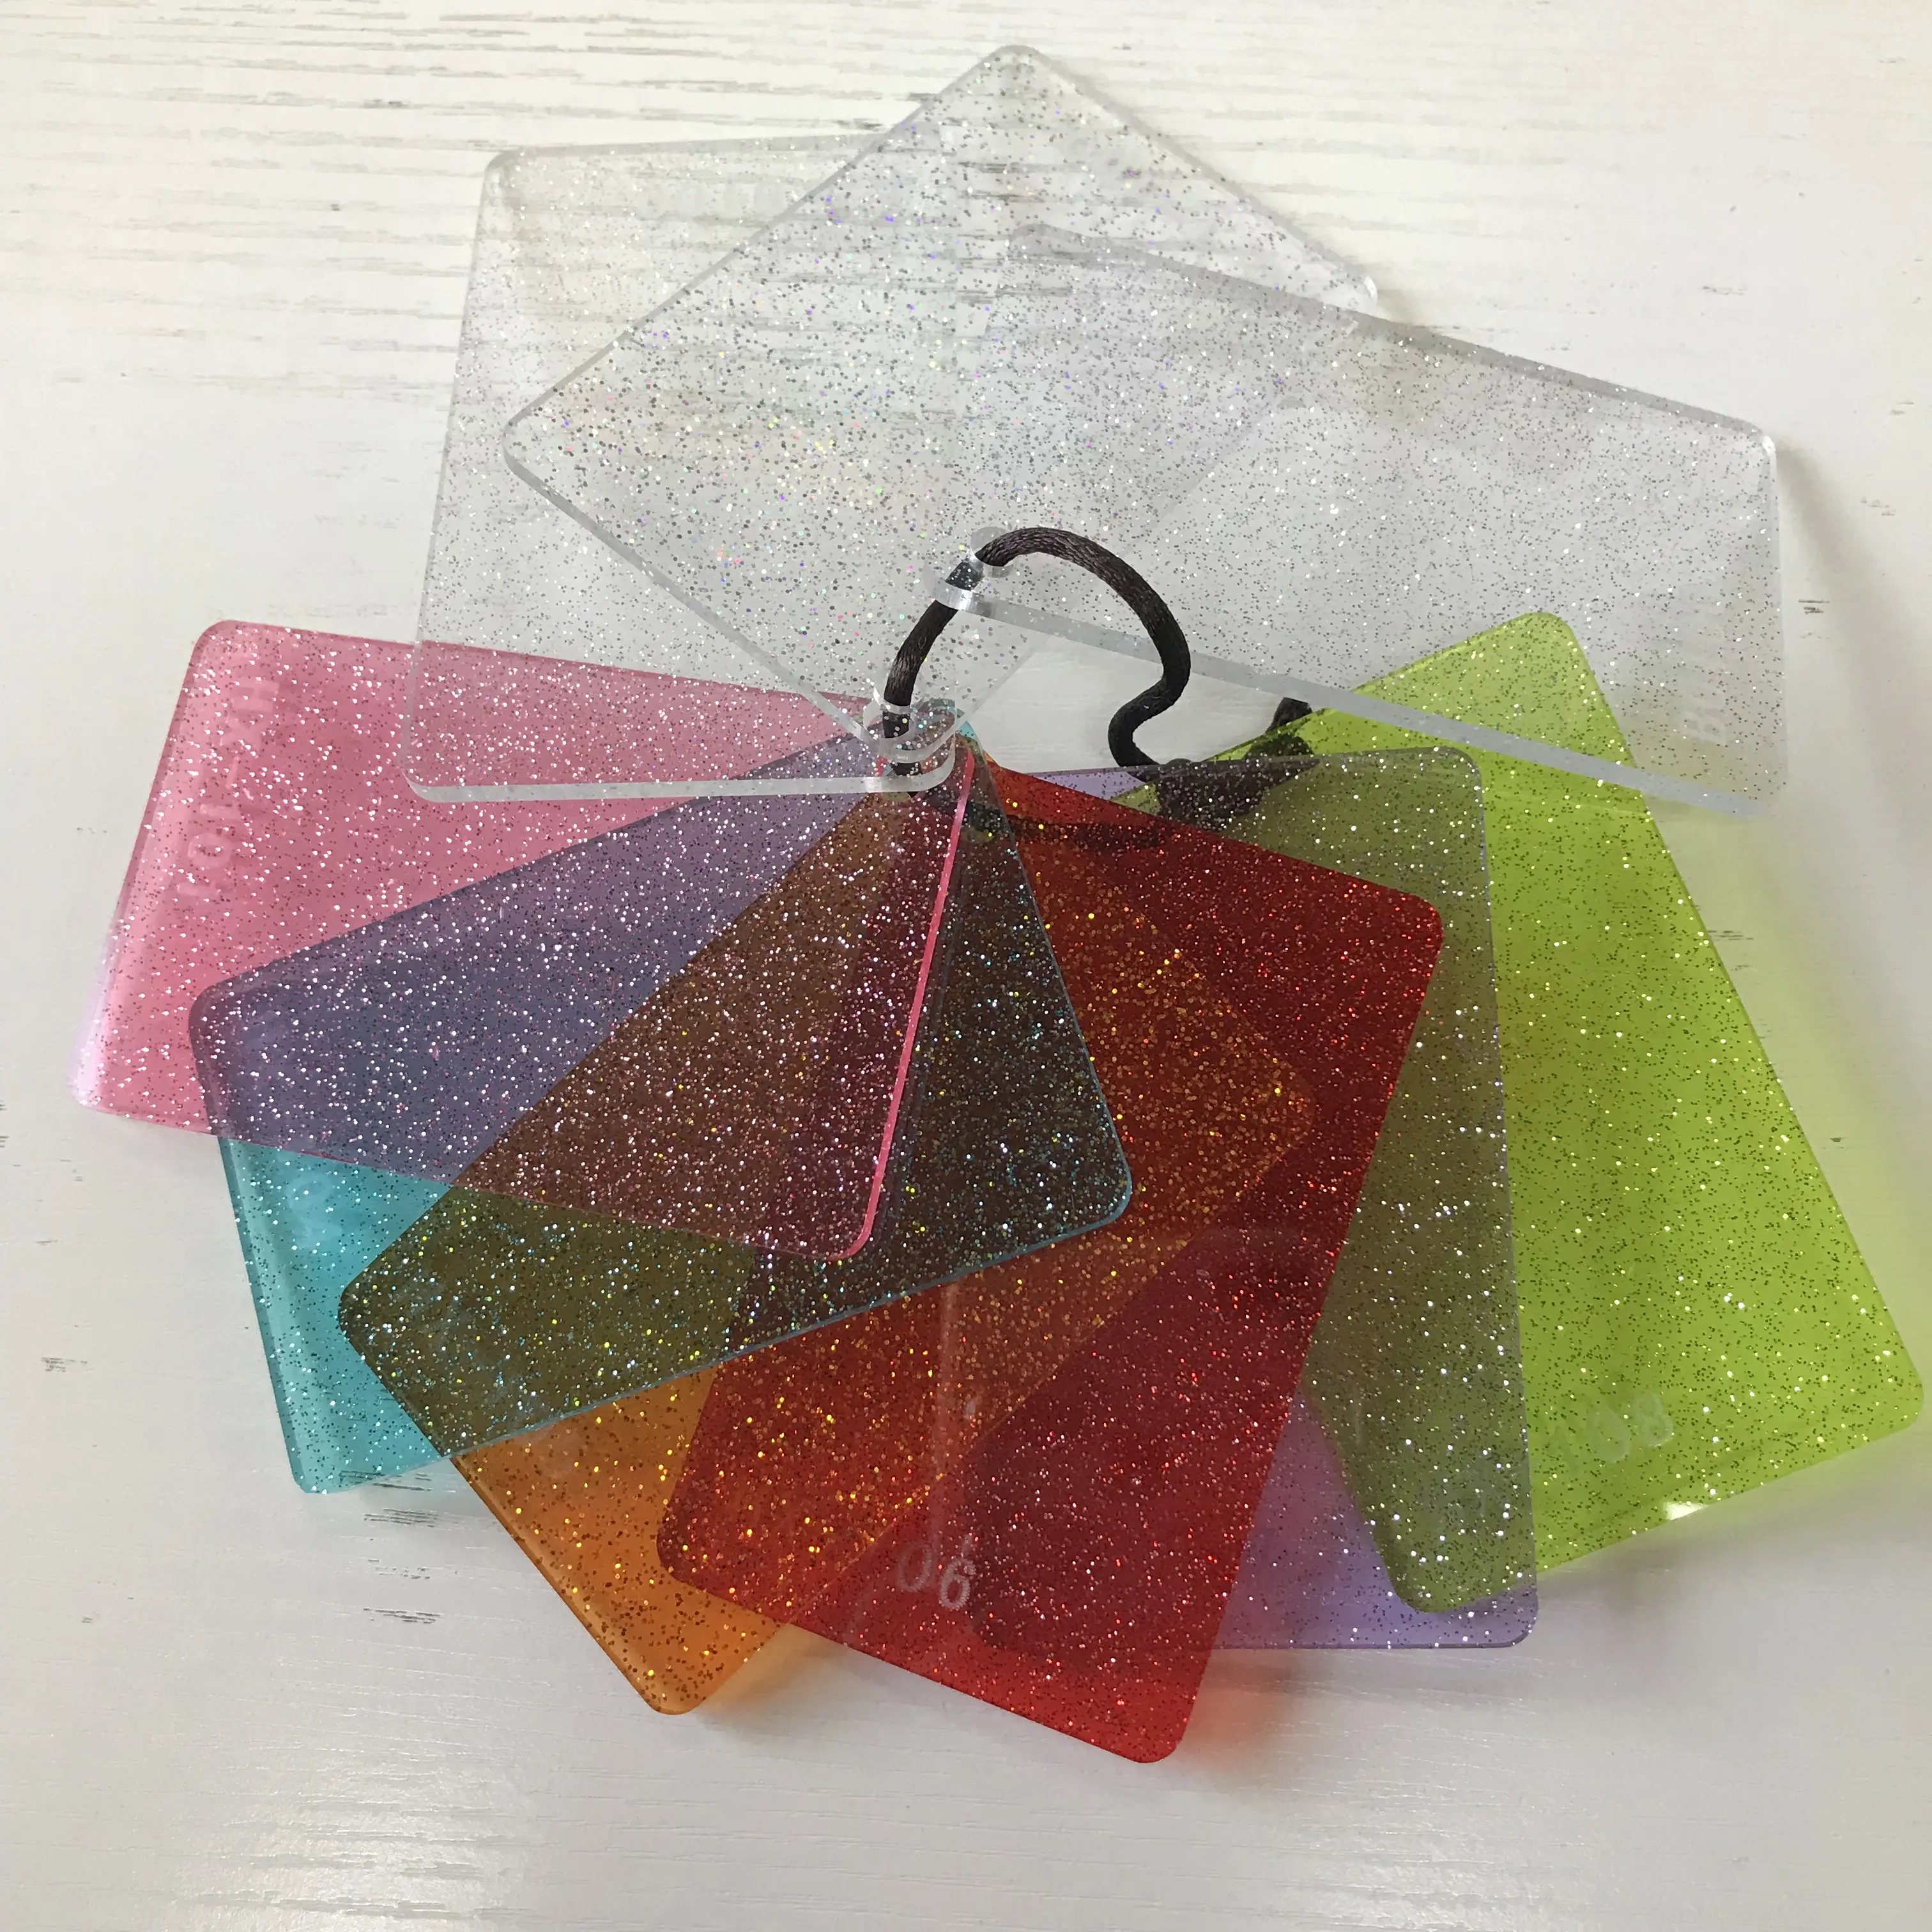 Nuovo materiale decorazione scintillante colore dello zucchero glitter acrilico charm cast sublimazione foglio di glitter schiumoso